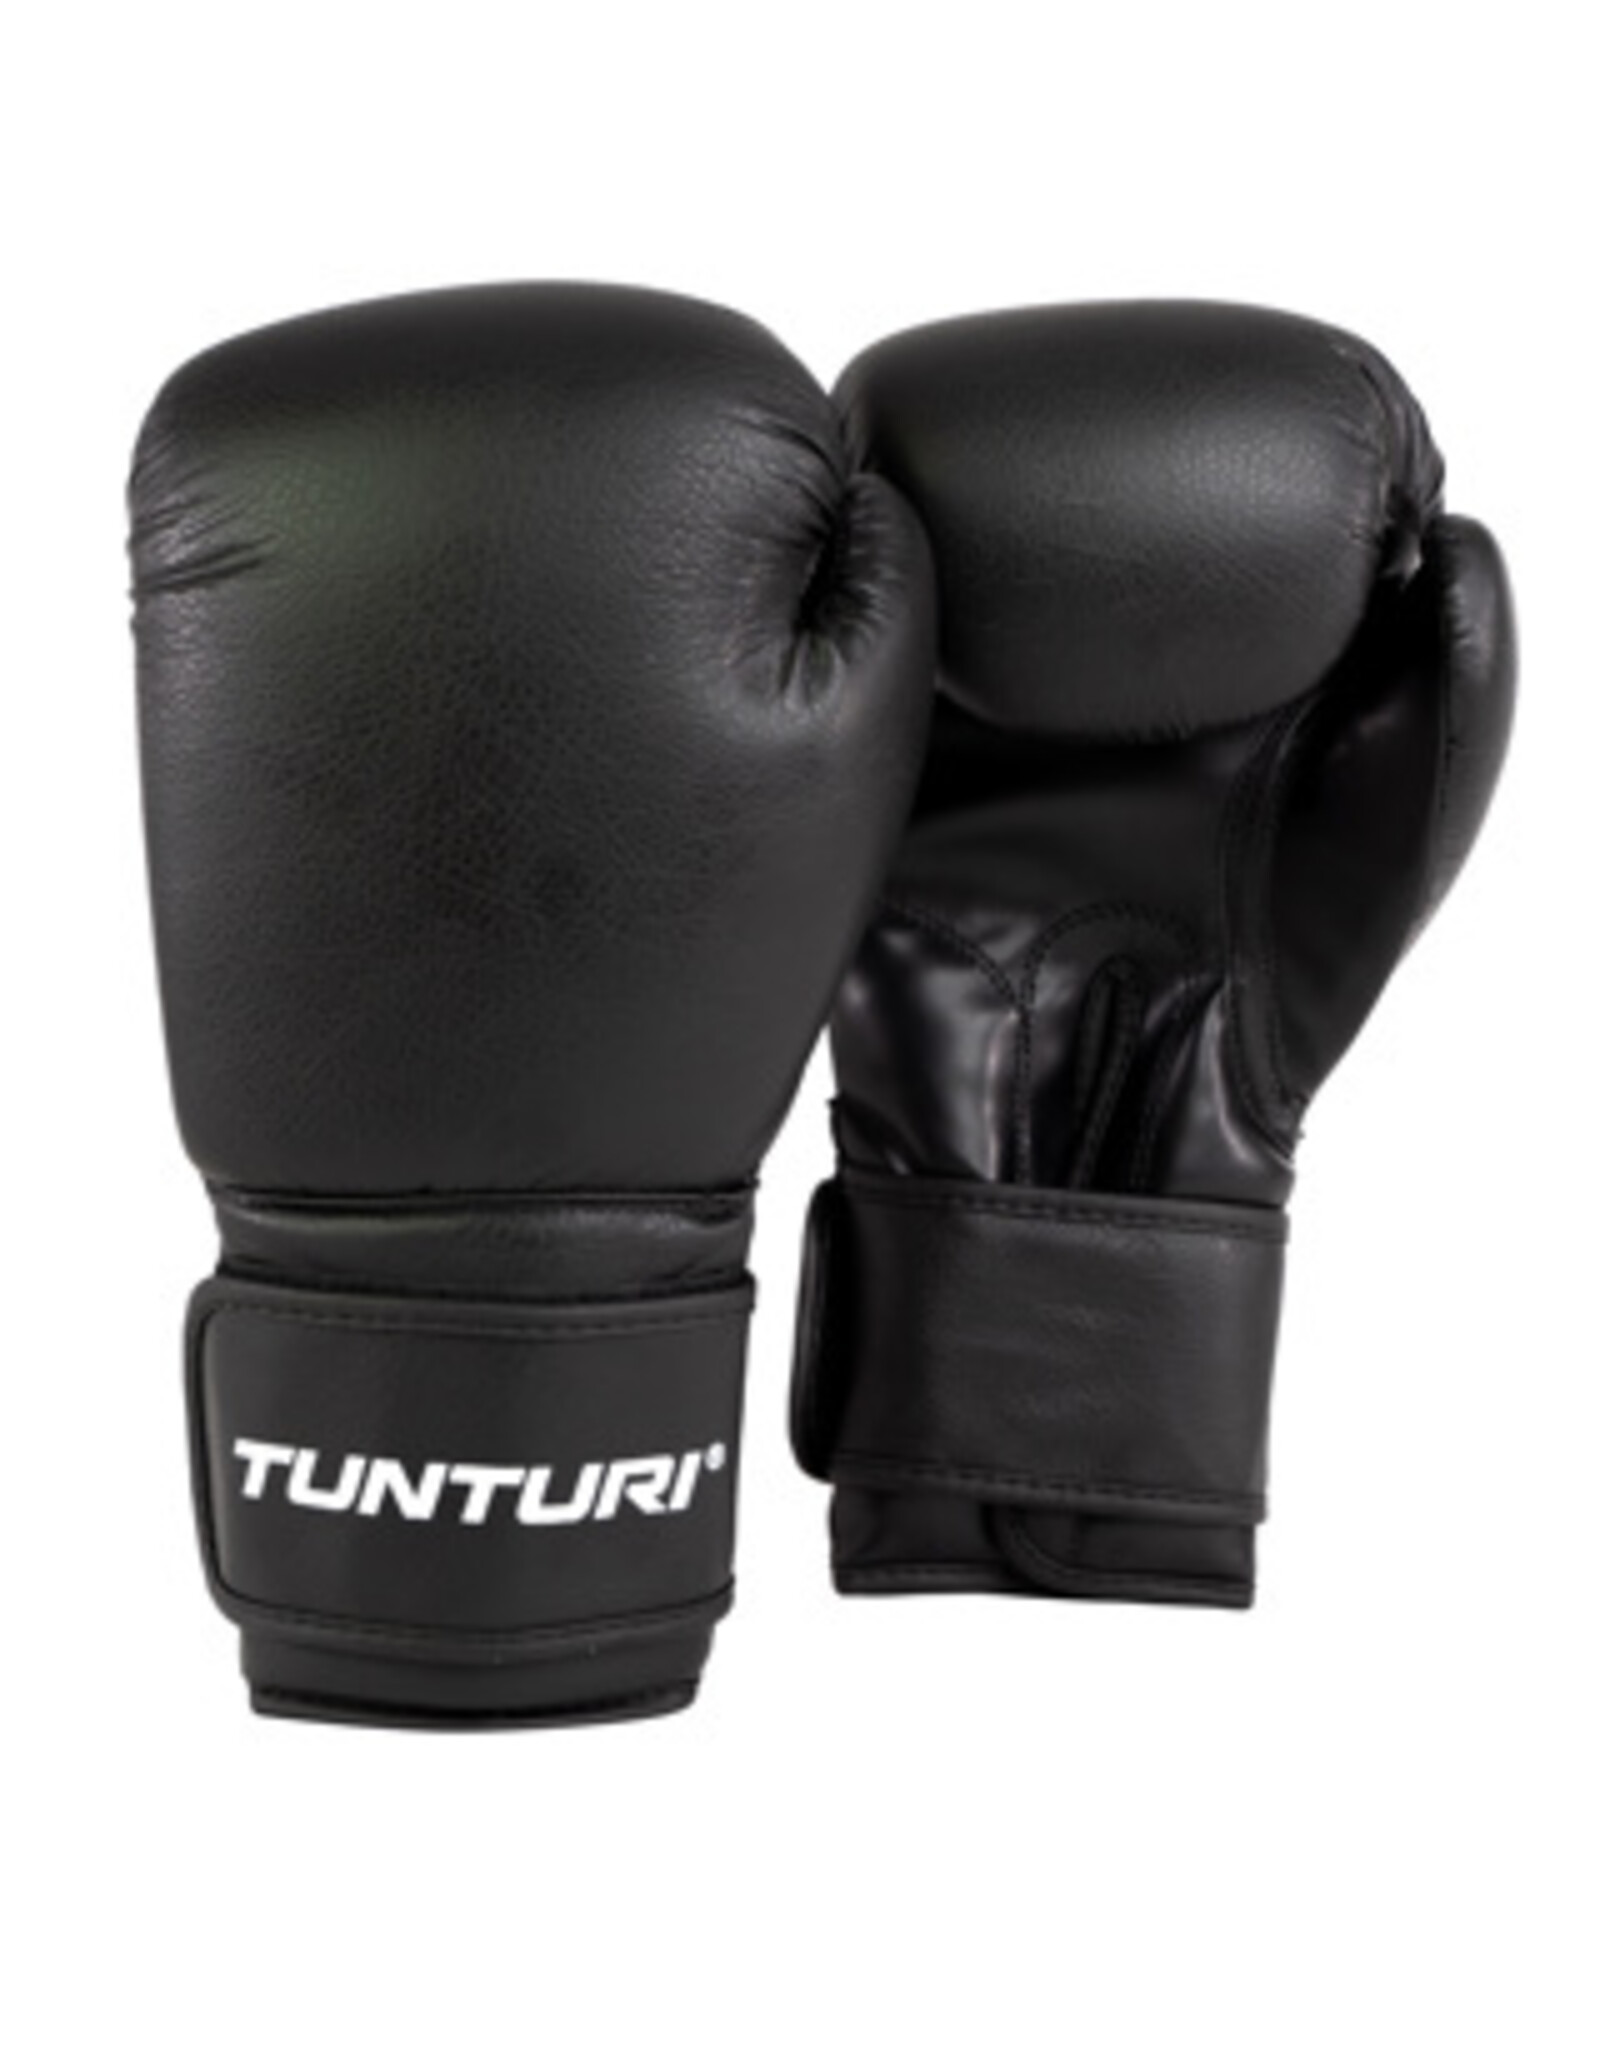 Tunturi boxing gloves 14 oz